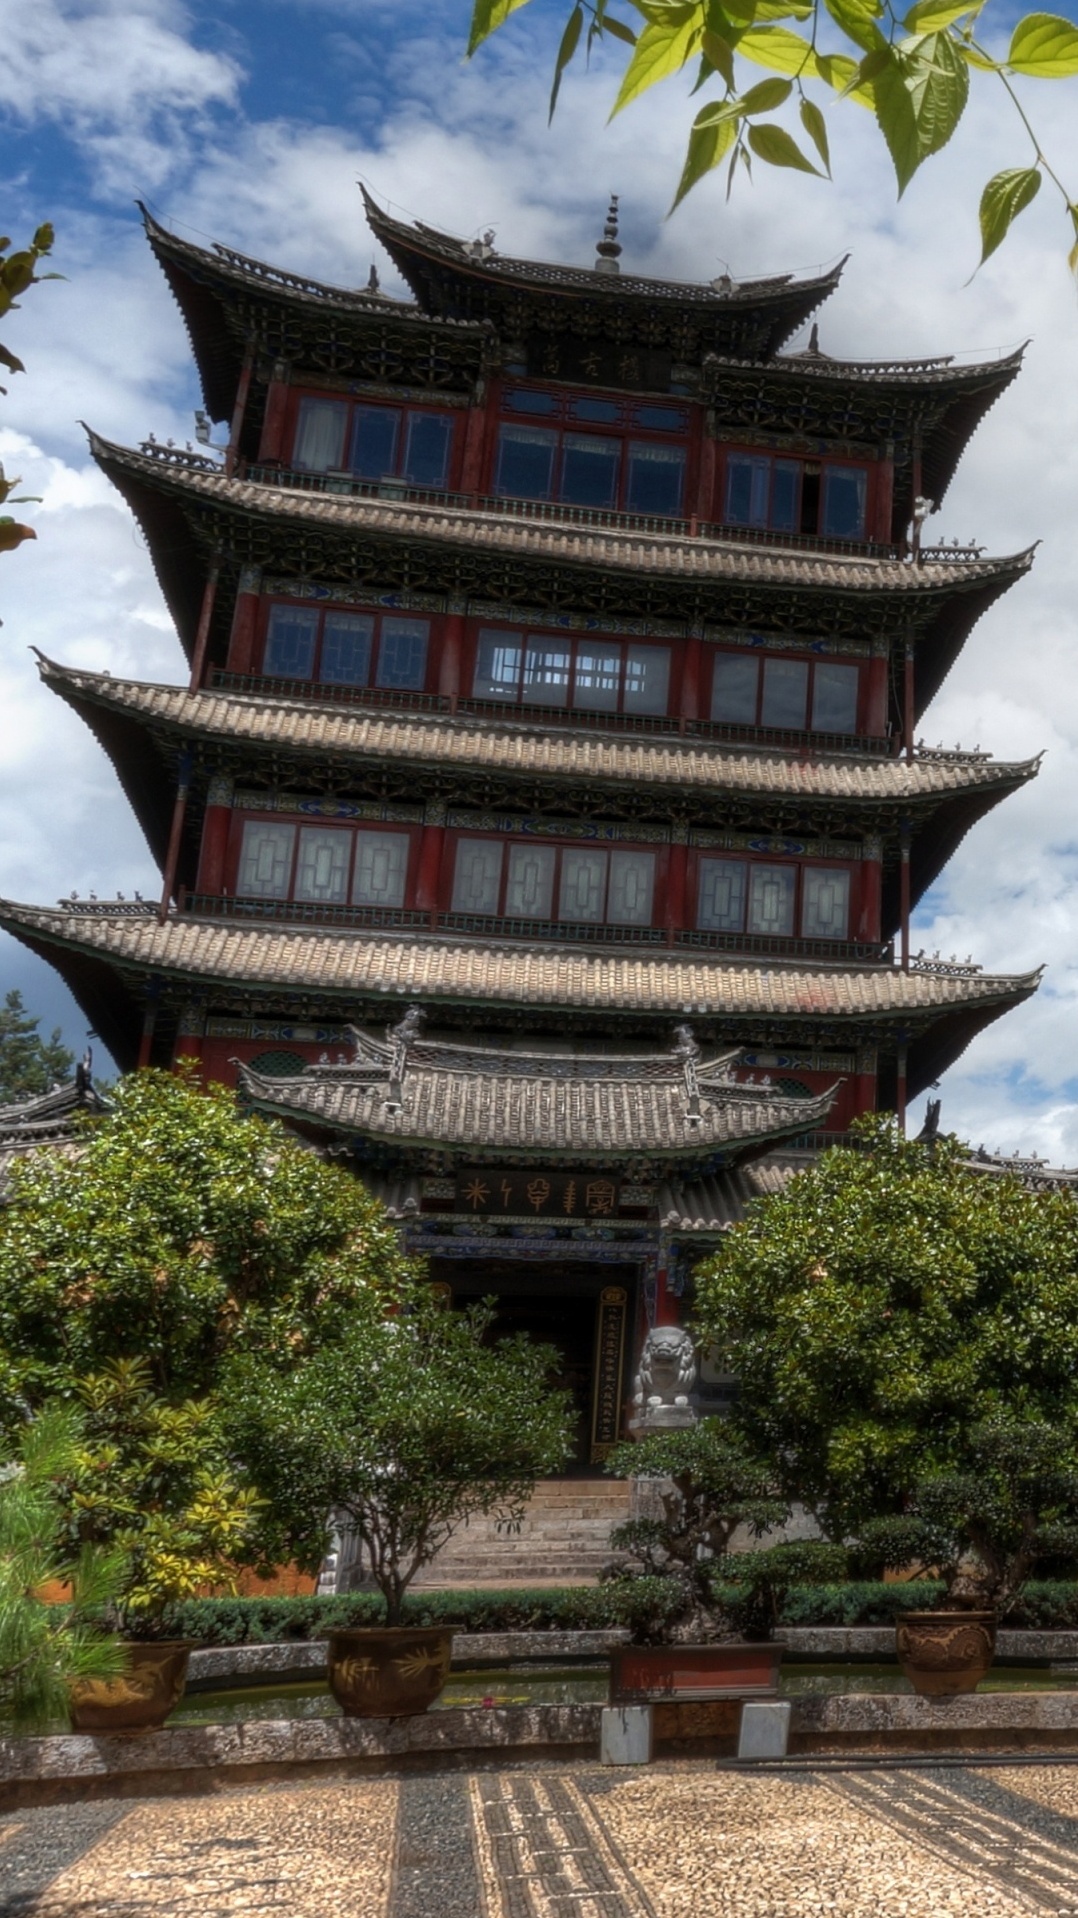 пагода, китайская архитектура, японская архитектура, вышка, архитектура